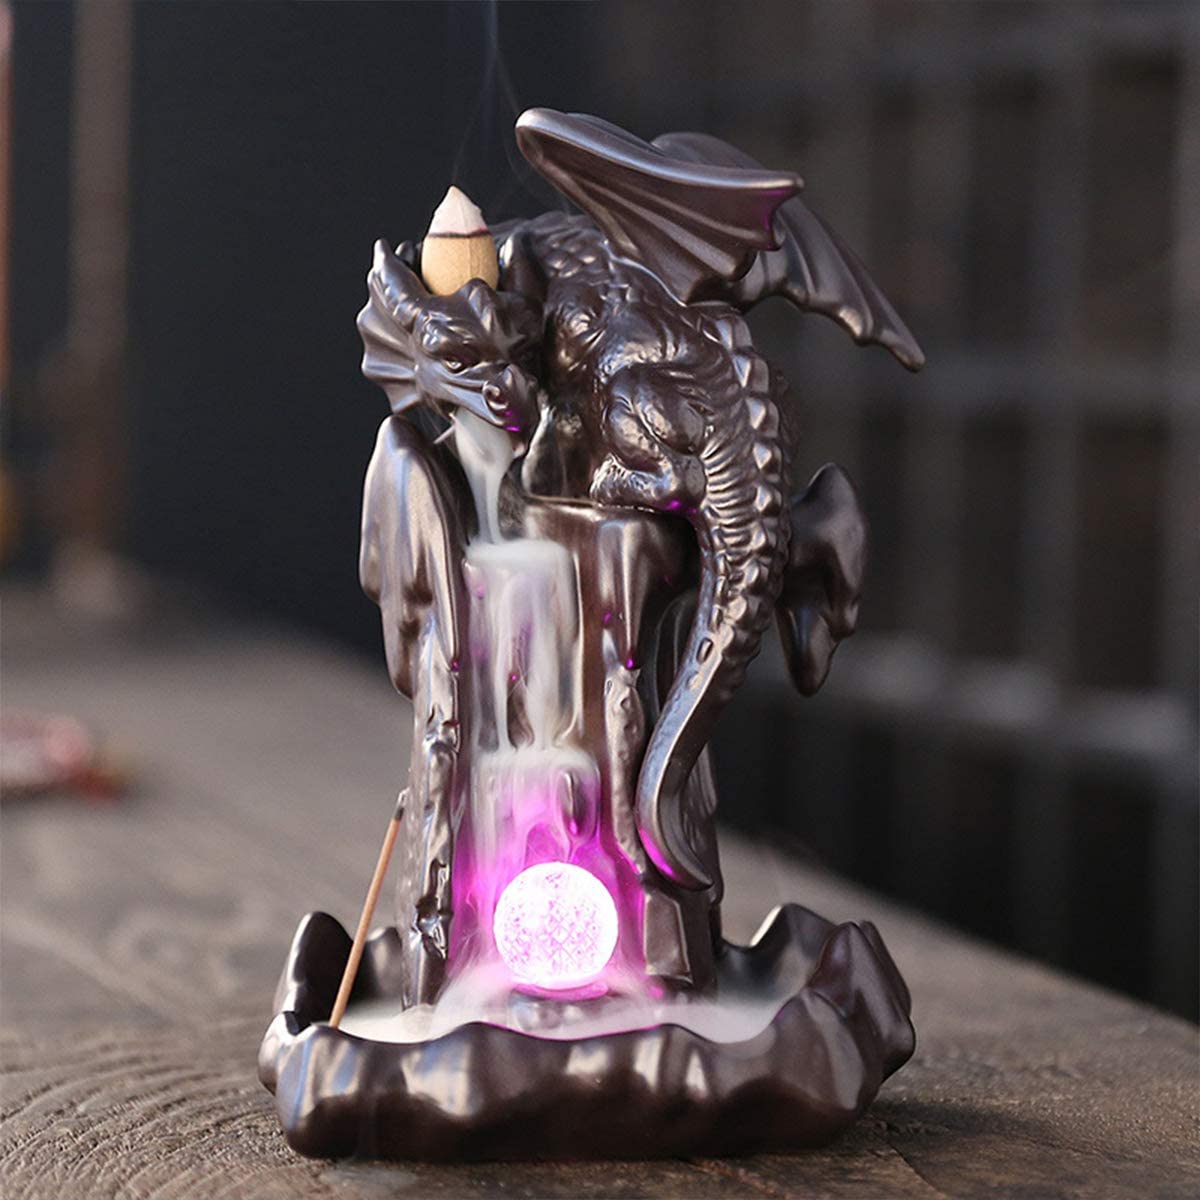 Flying Dragon Incense Burner - Built-in LED